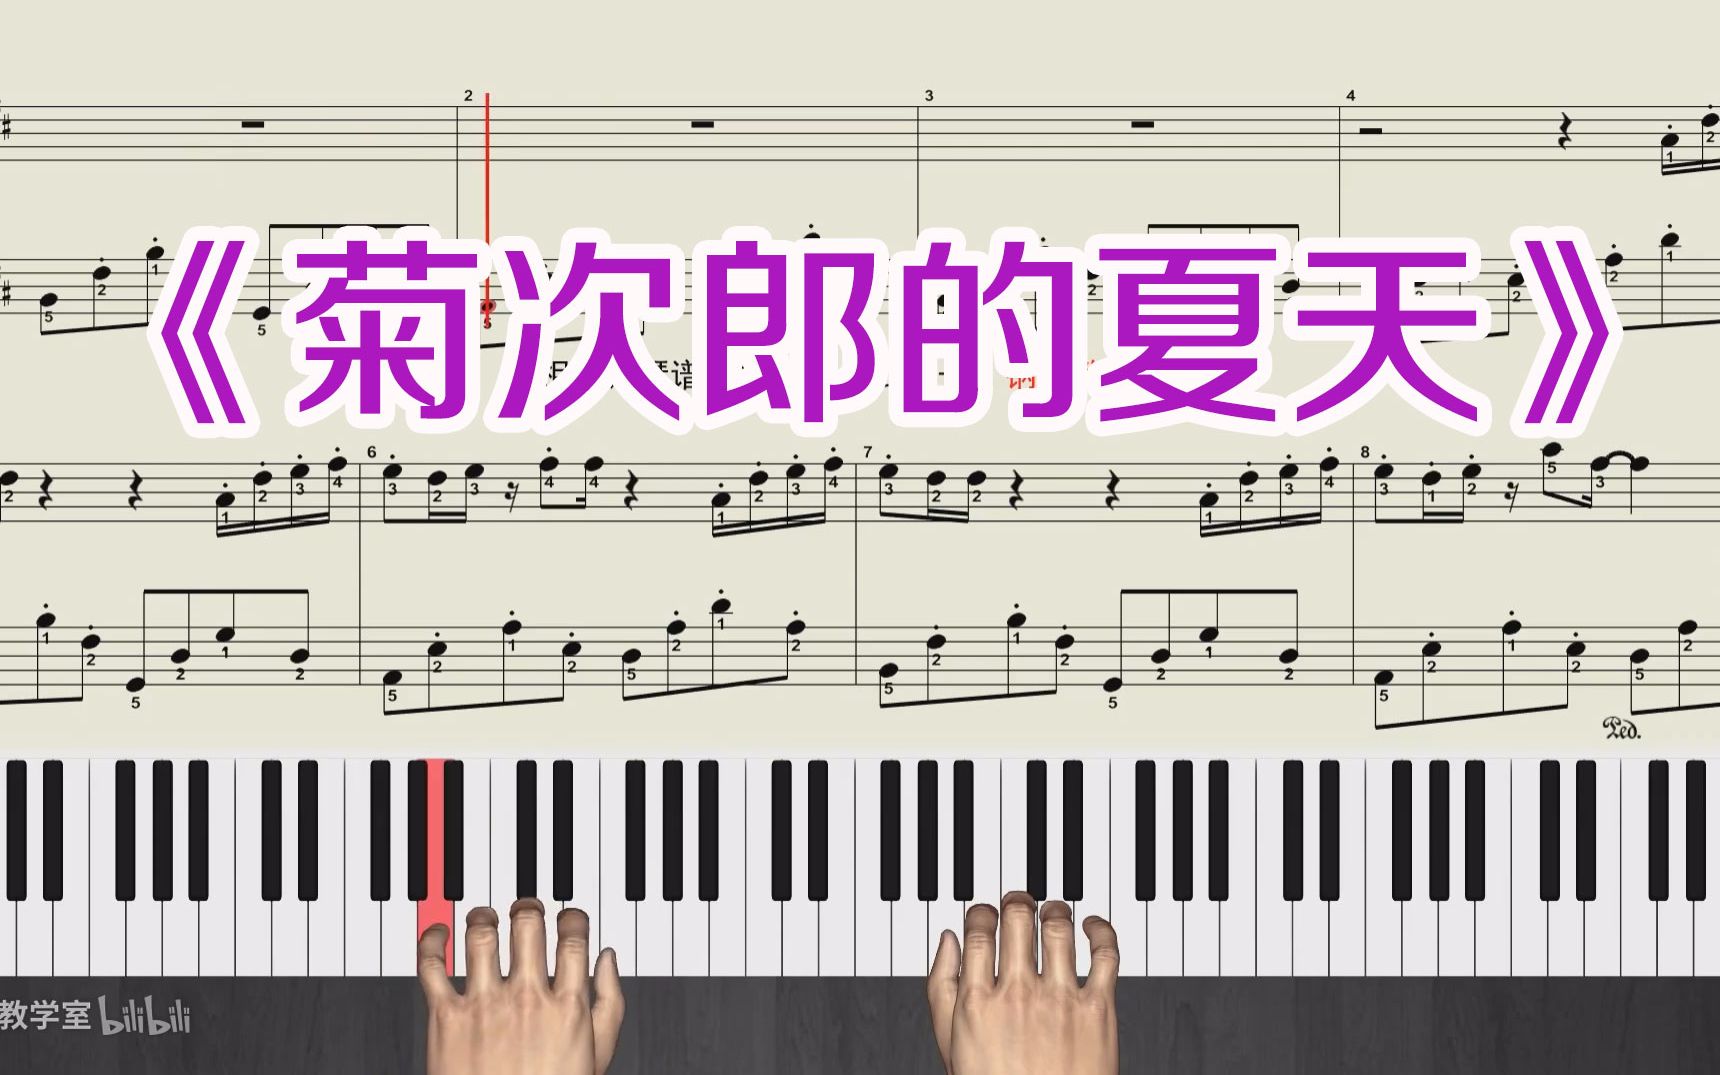 经典钢琴曲《菊次郎的夏天》钢琴教学视频  五线谱带全部指法